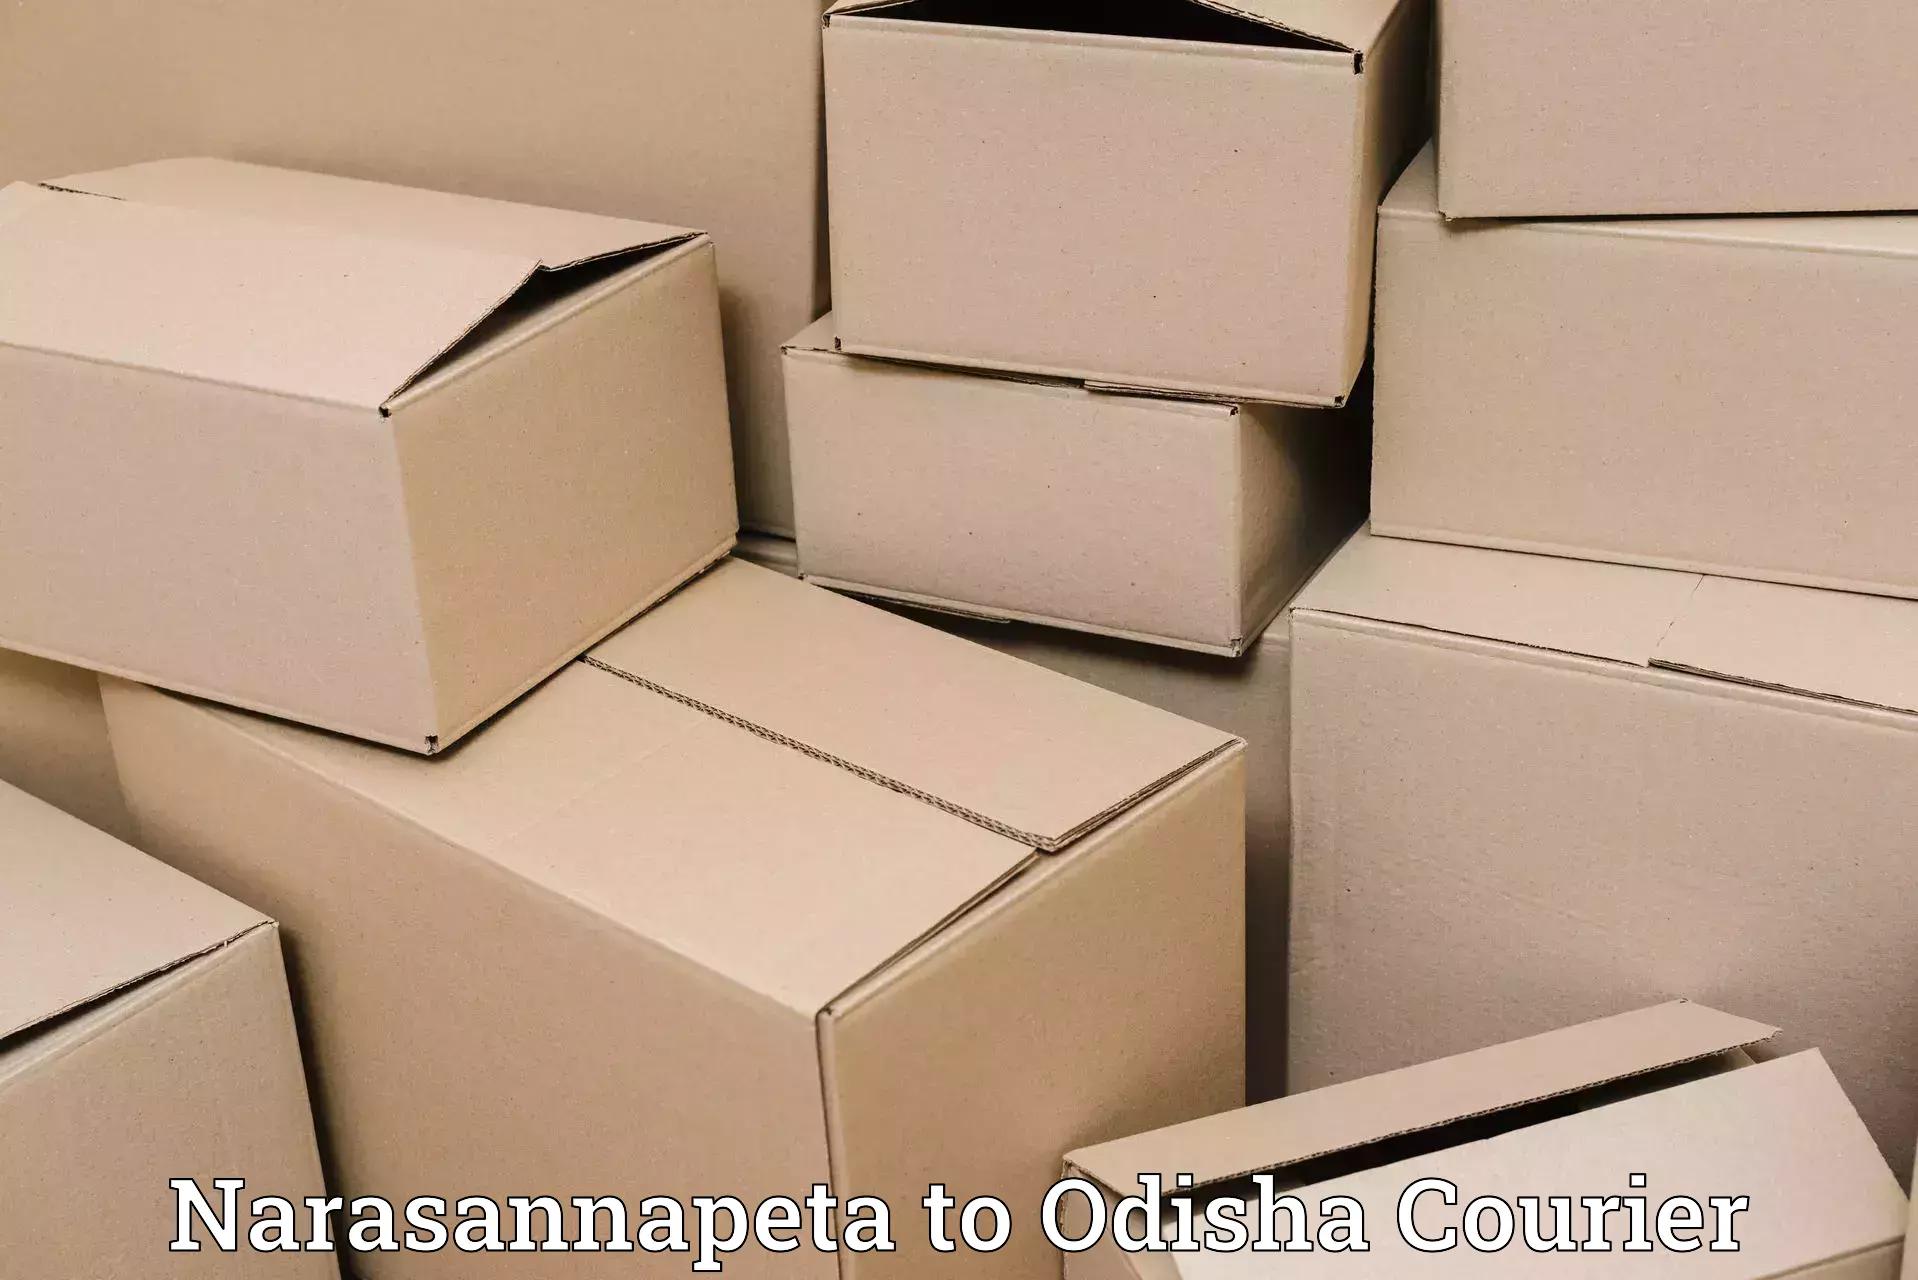 Smart parcel tracking Narasannapeta to Binjharpur